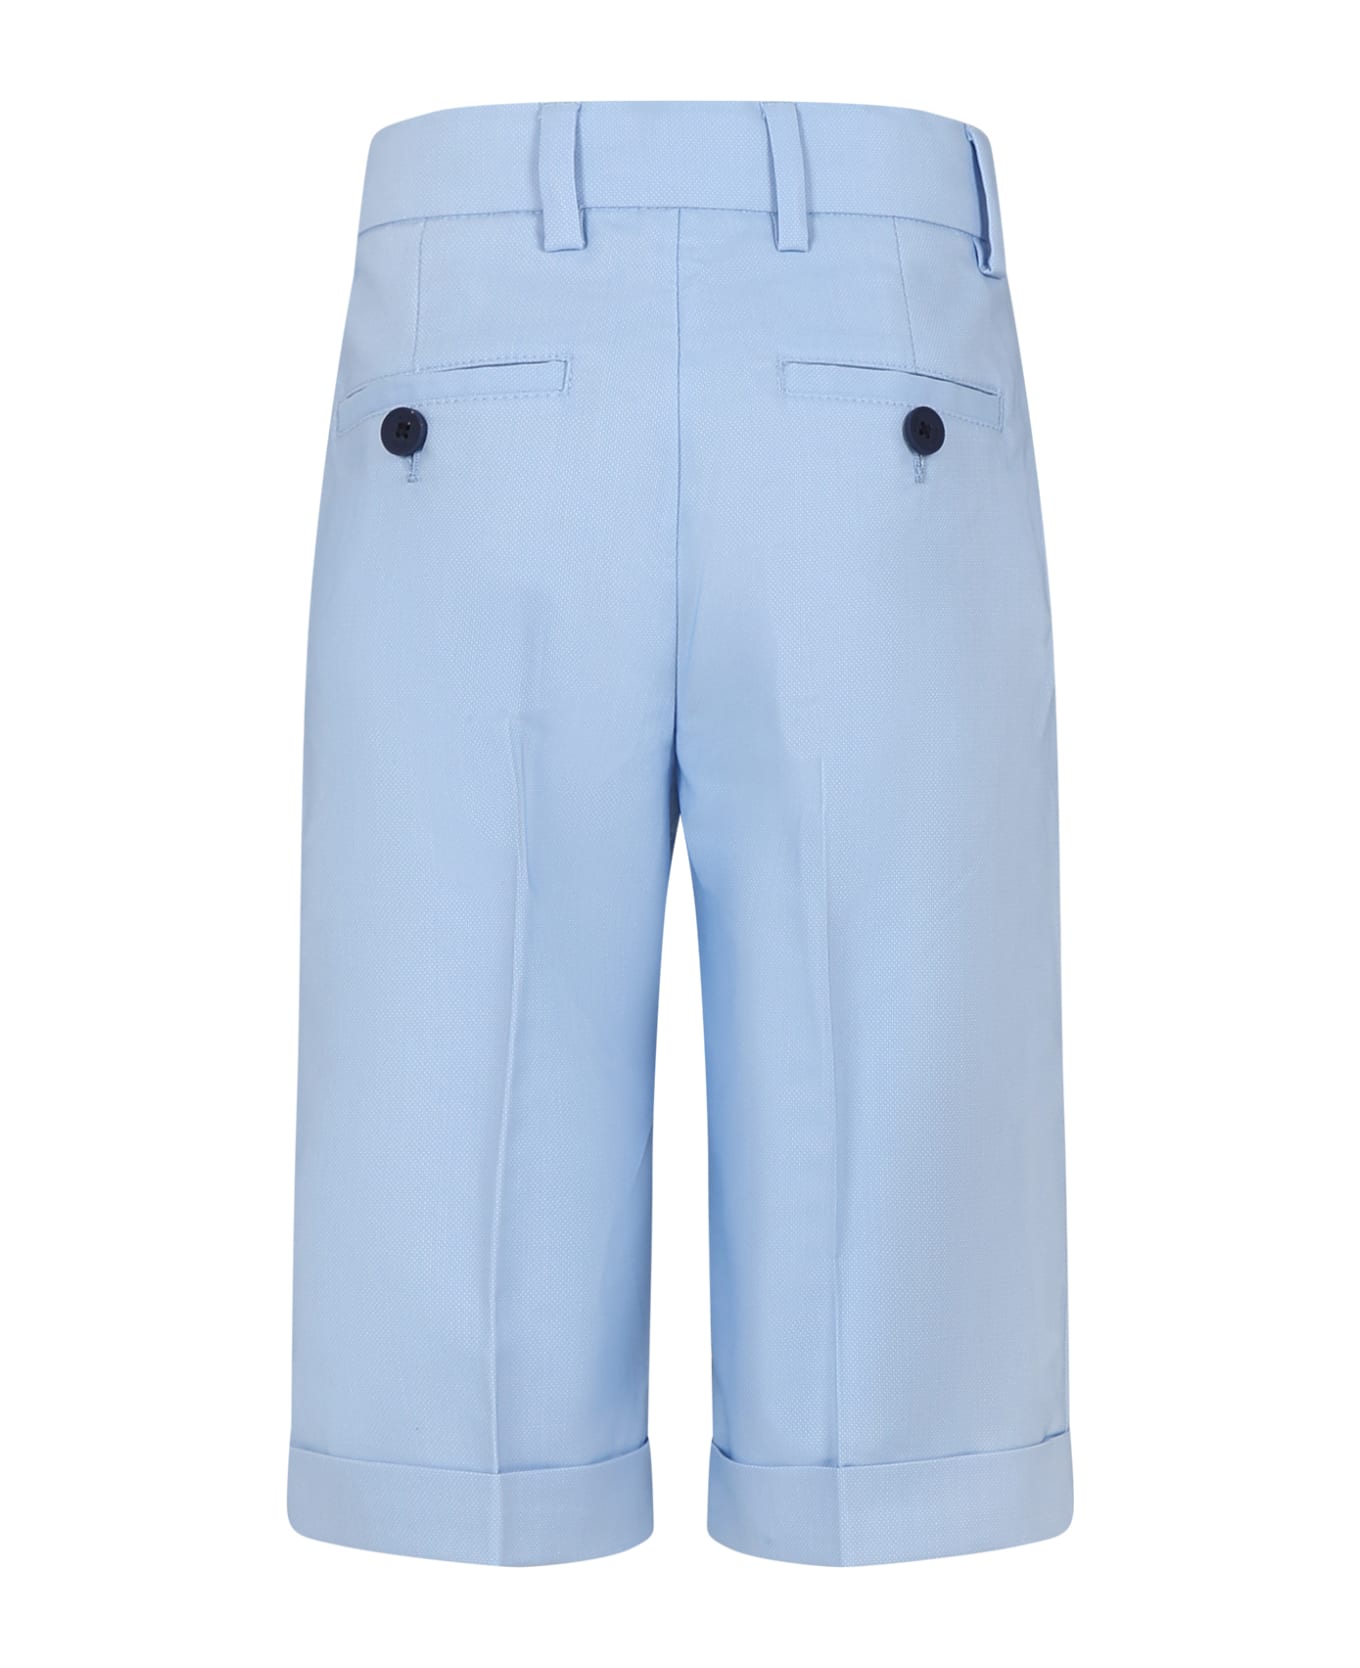 Hugo Boss Elegant Sky Blue Shorts For Boy - Light Blue ボトムス